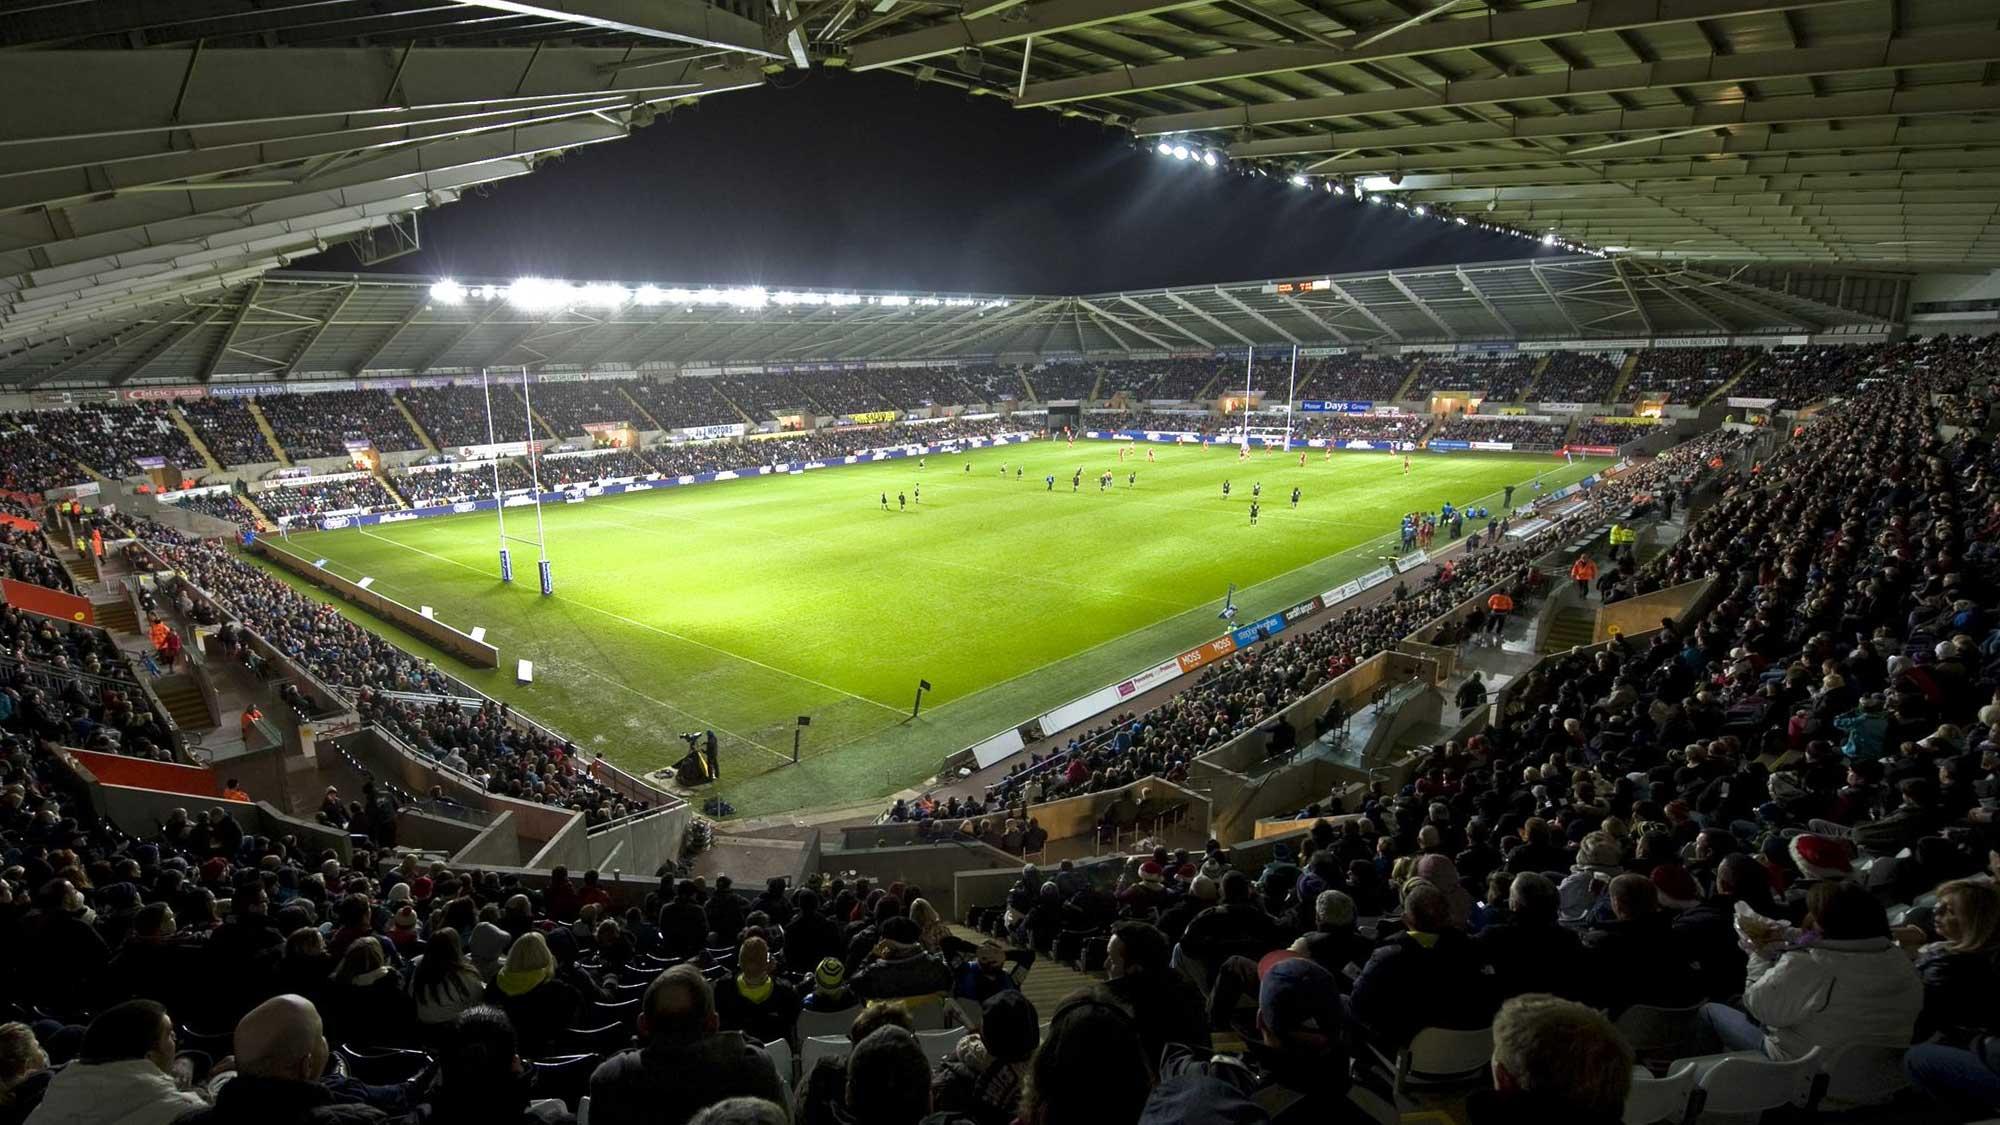 Panoramic view of the Swansea.com stadium